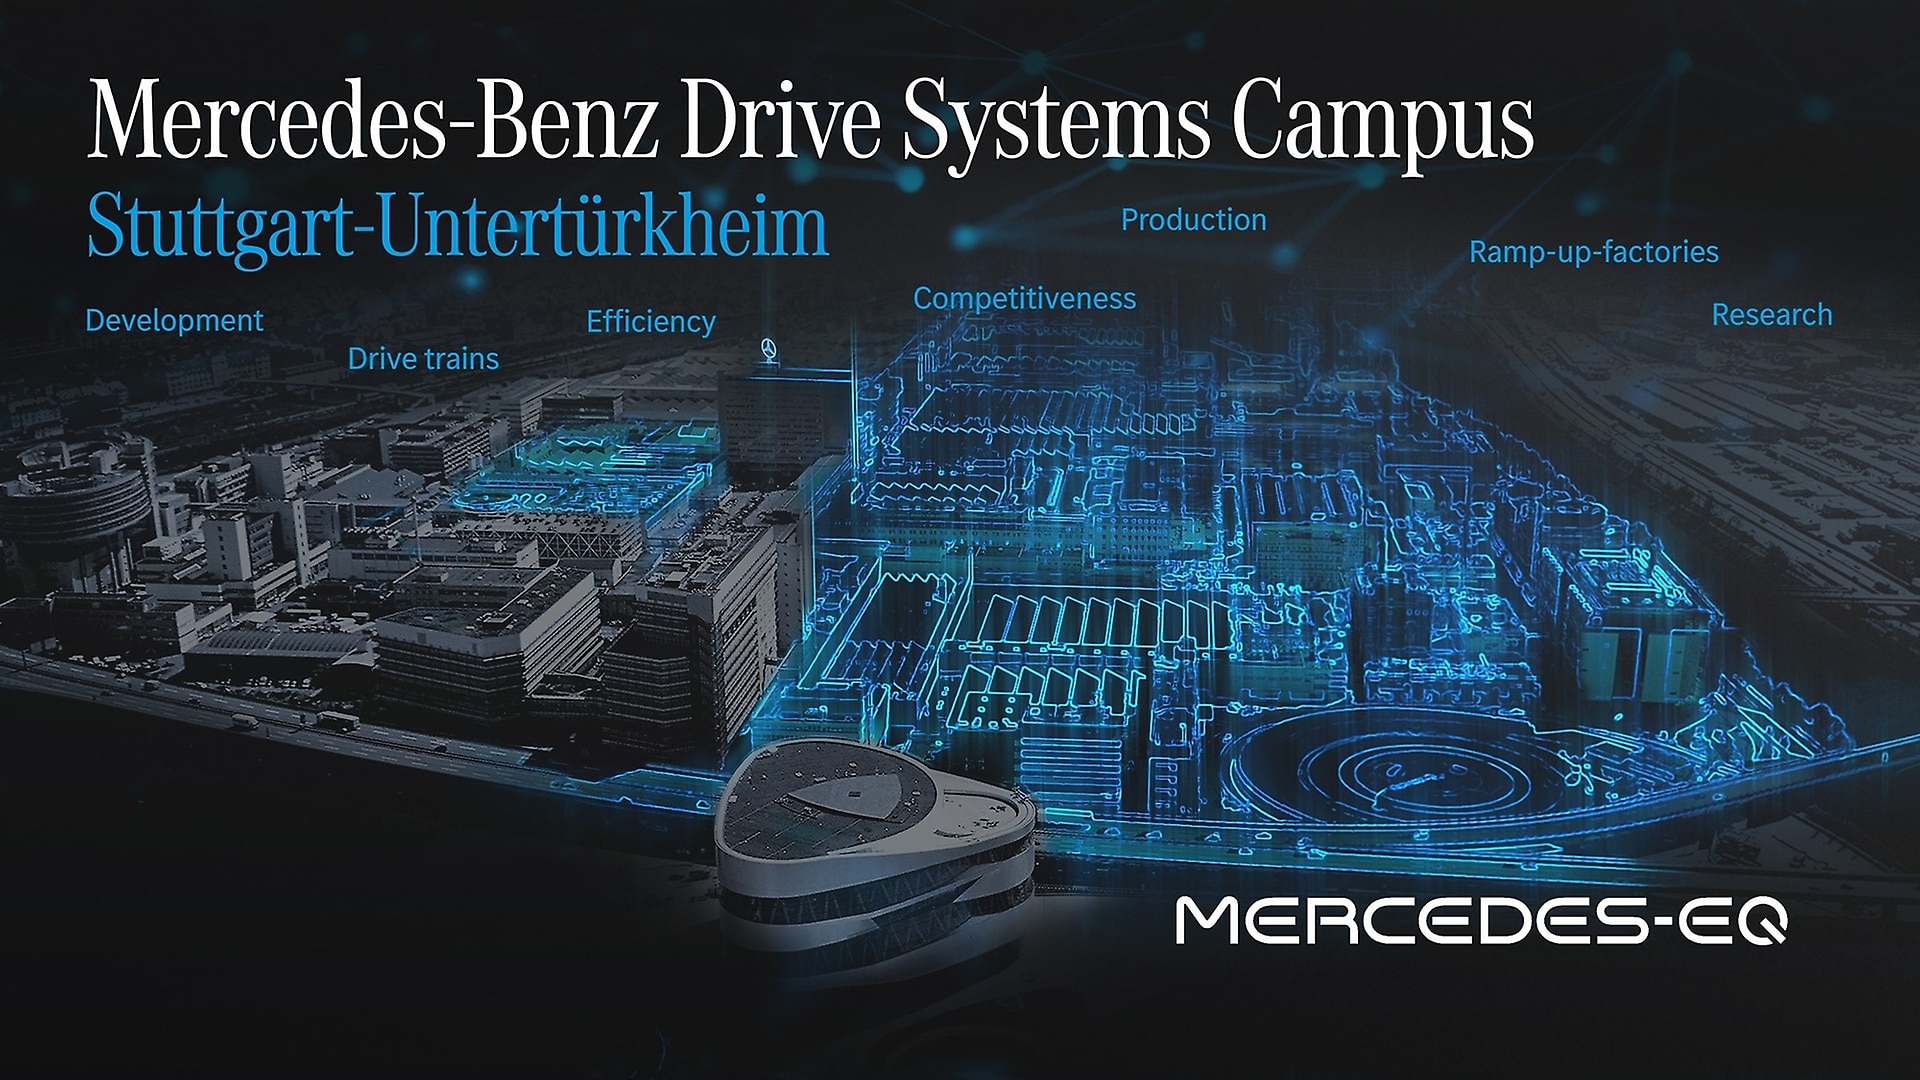 Mercedes-Benz Drive Systems Campus Untertürkheim.